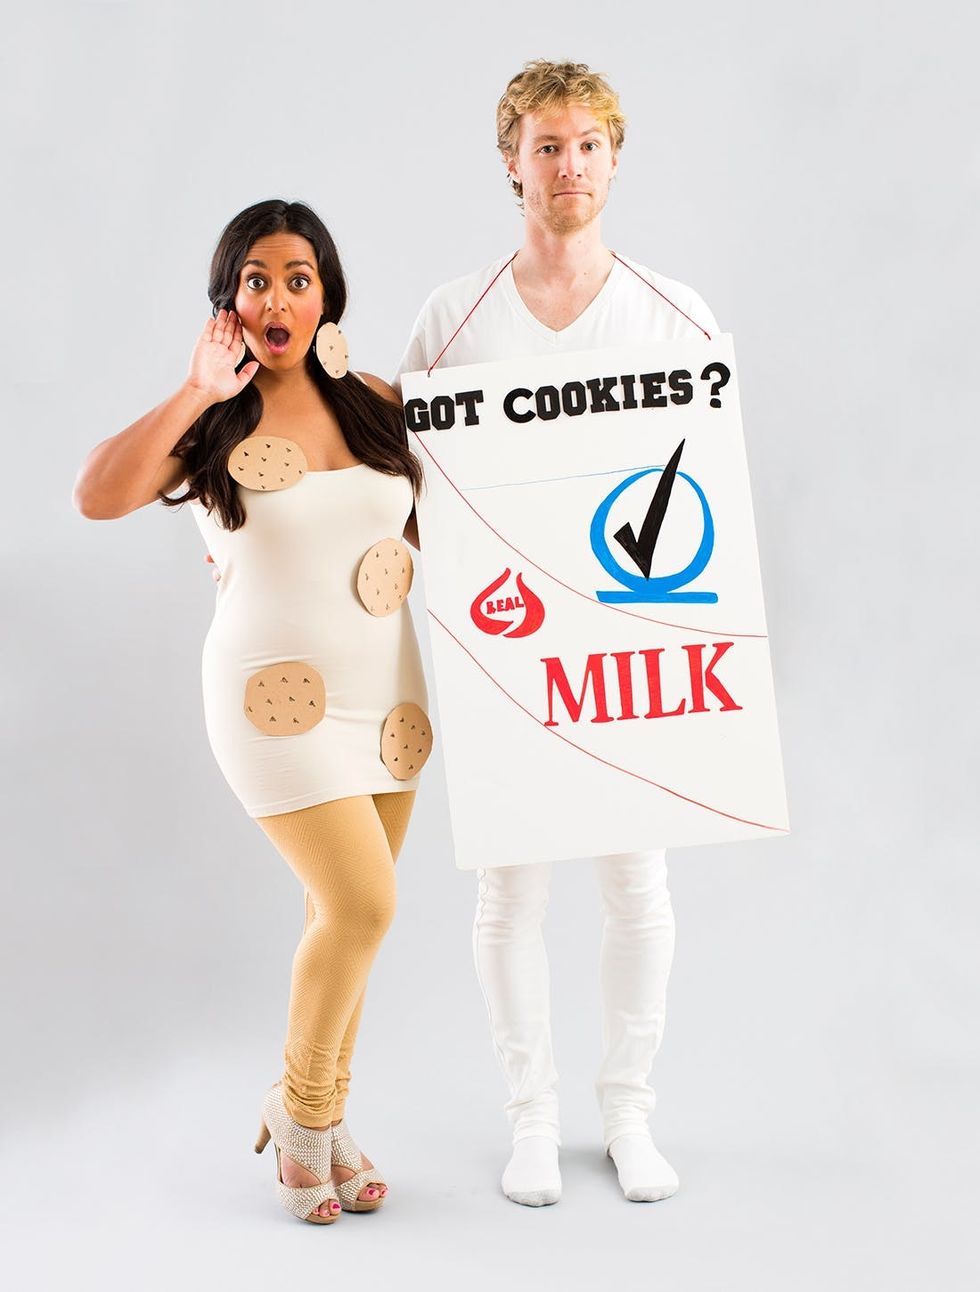 Cookies and milk Halloween costume